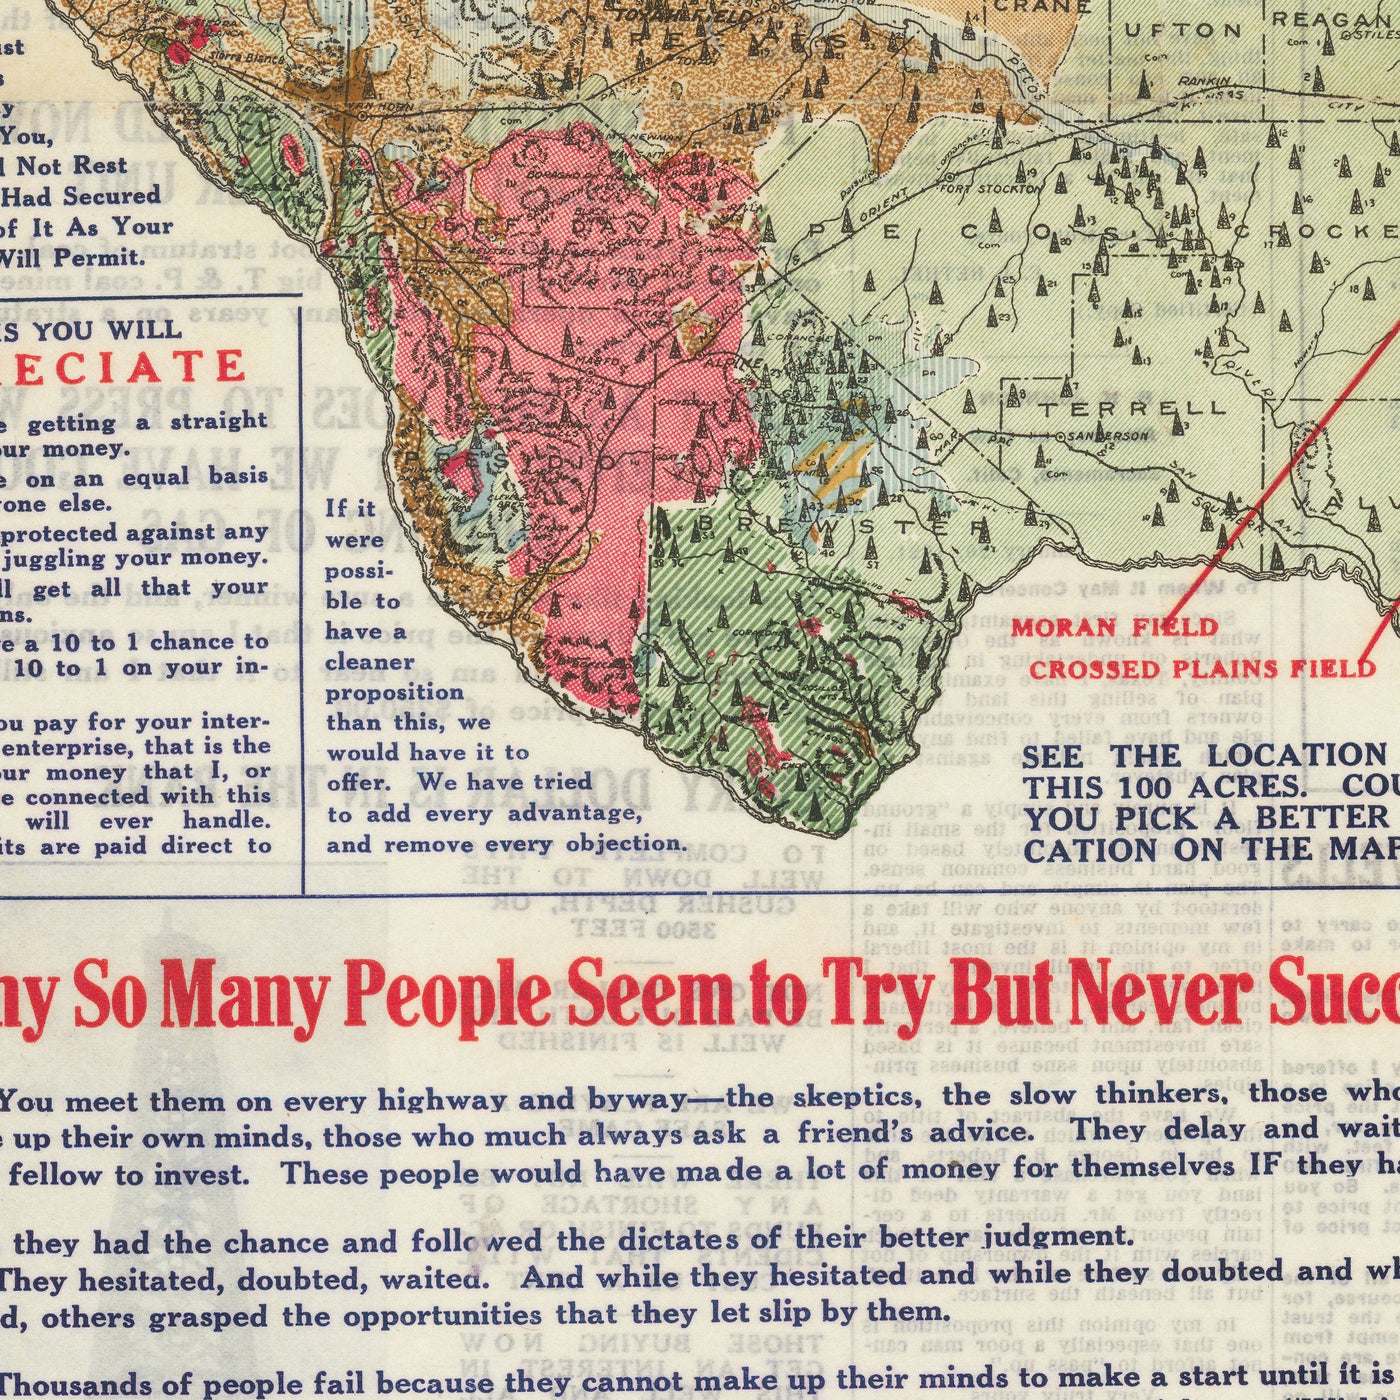 Seltene alte geologische Karte von Texas, 1921 - Eastland County Oil Boom Investment Chart